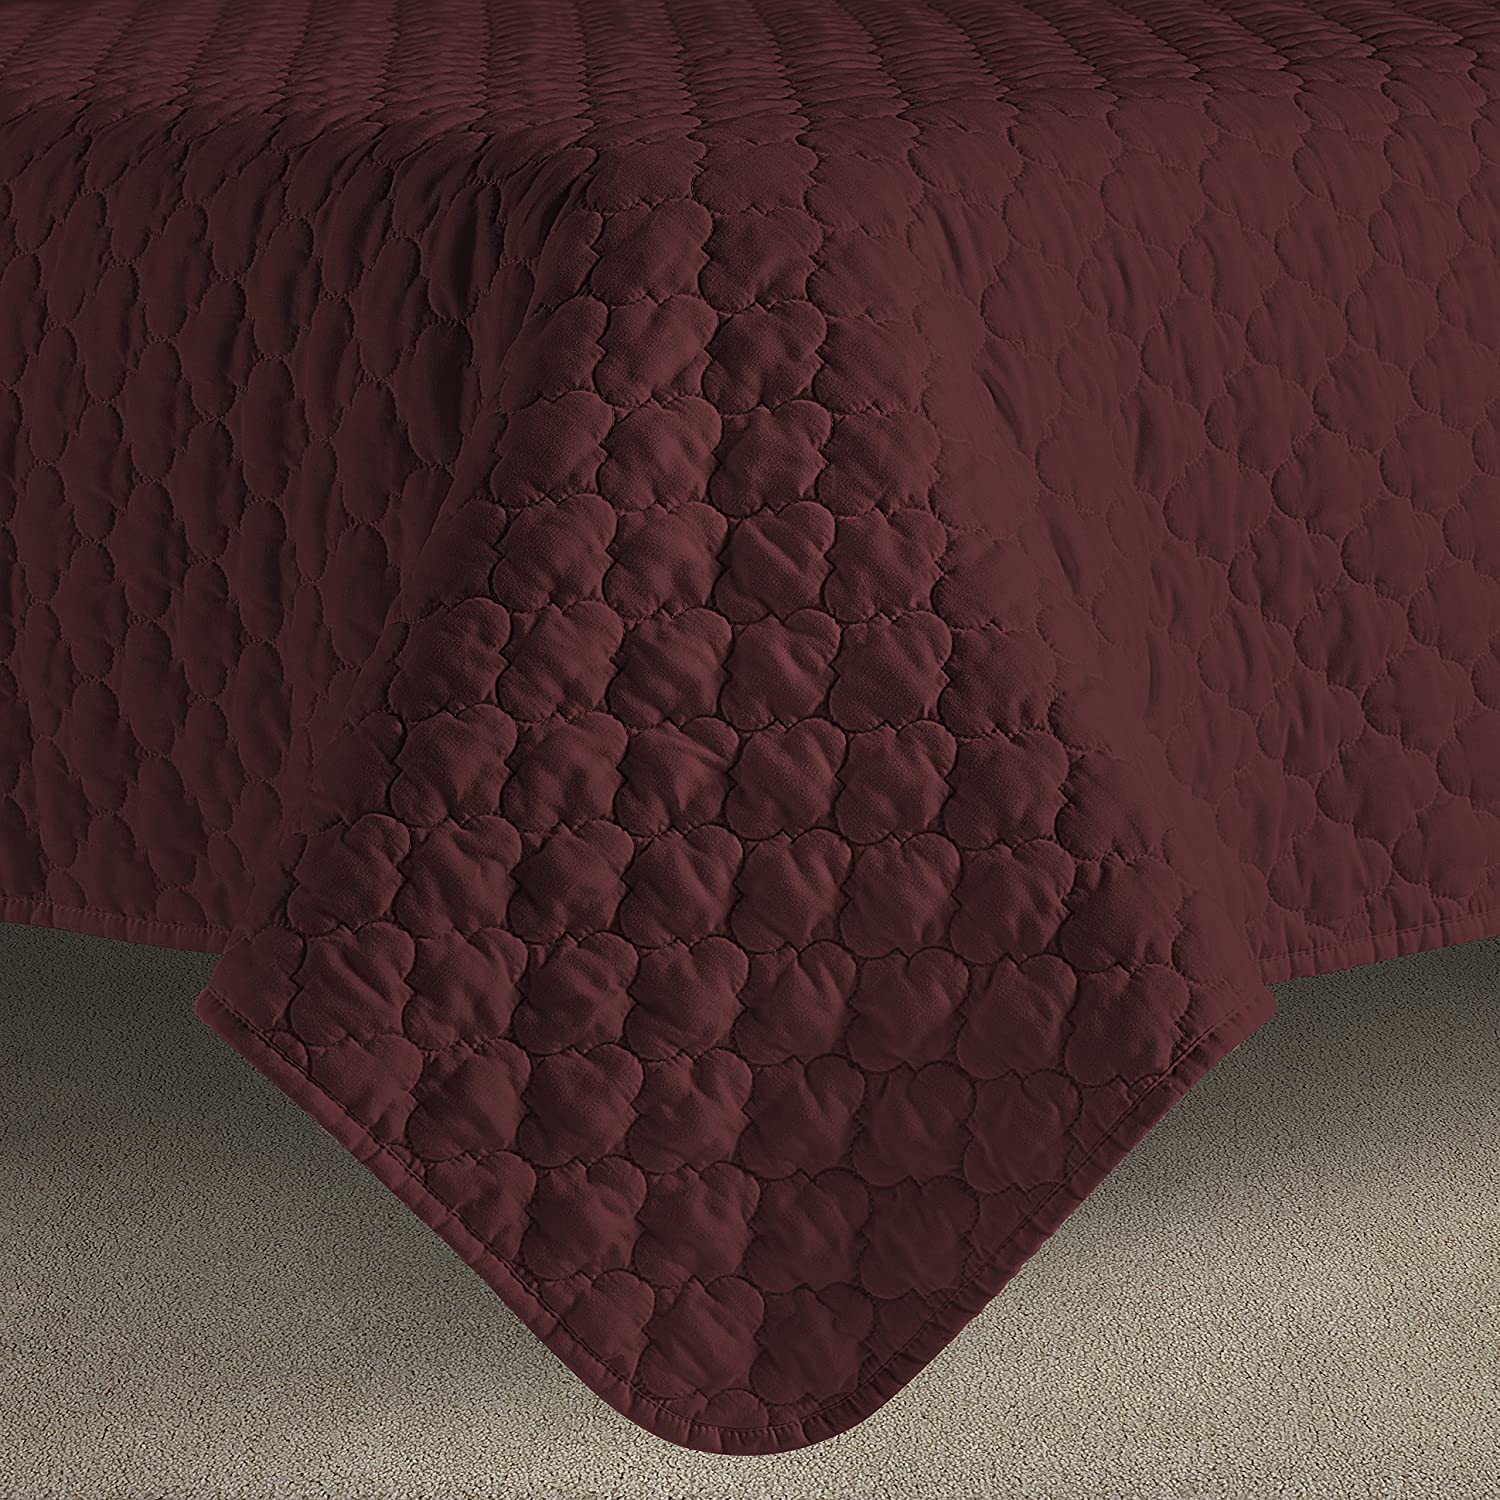 Details about   Comfy Bedding 3-Piece Bedspread Coverlet Set Oversized And Prewashed Lantern Oge 